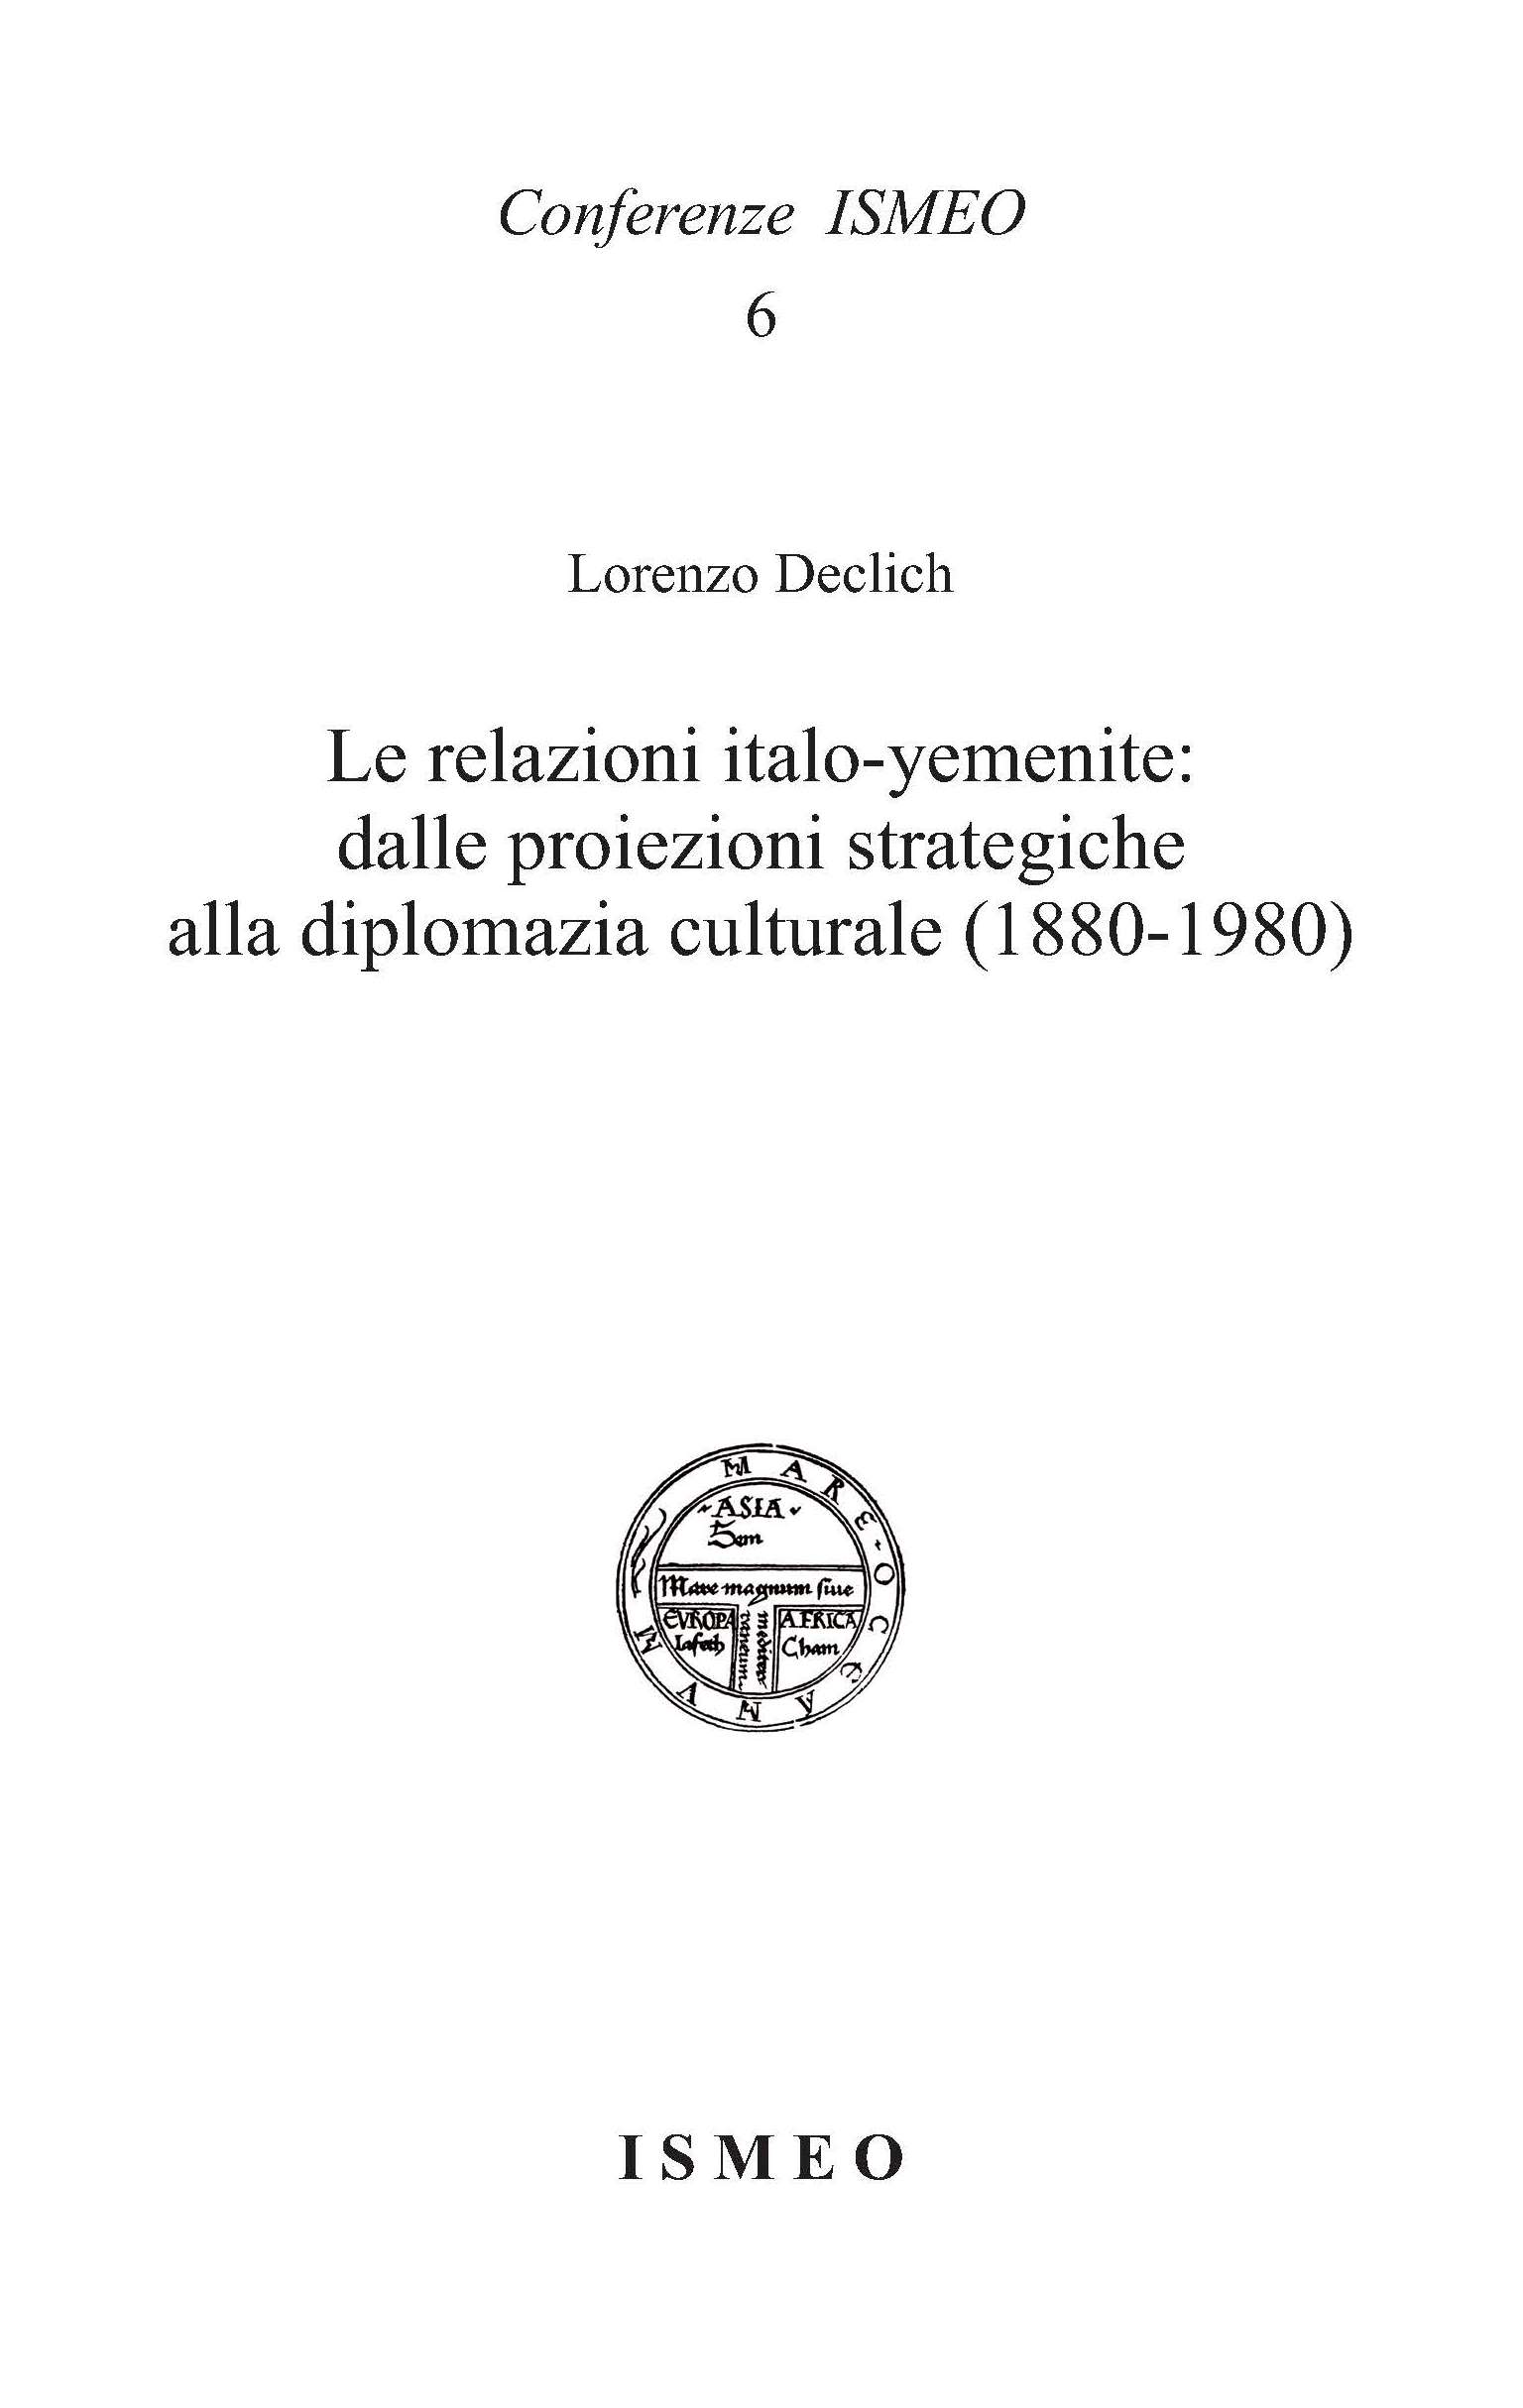 Le relazioni italo-yemenite:
dalle proiezioni strategiche
alla diplomazia culturale (1880-1980) - Conferenze ISMEO 6